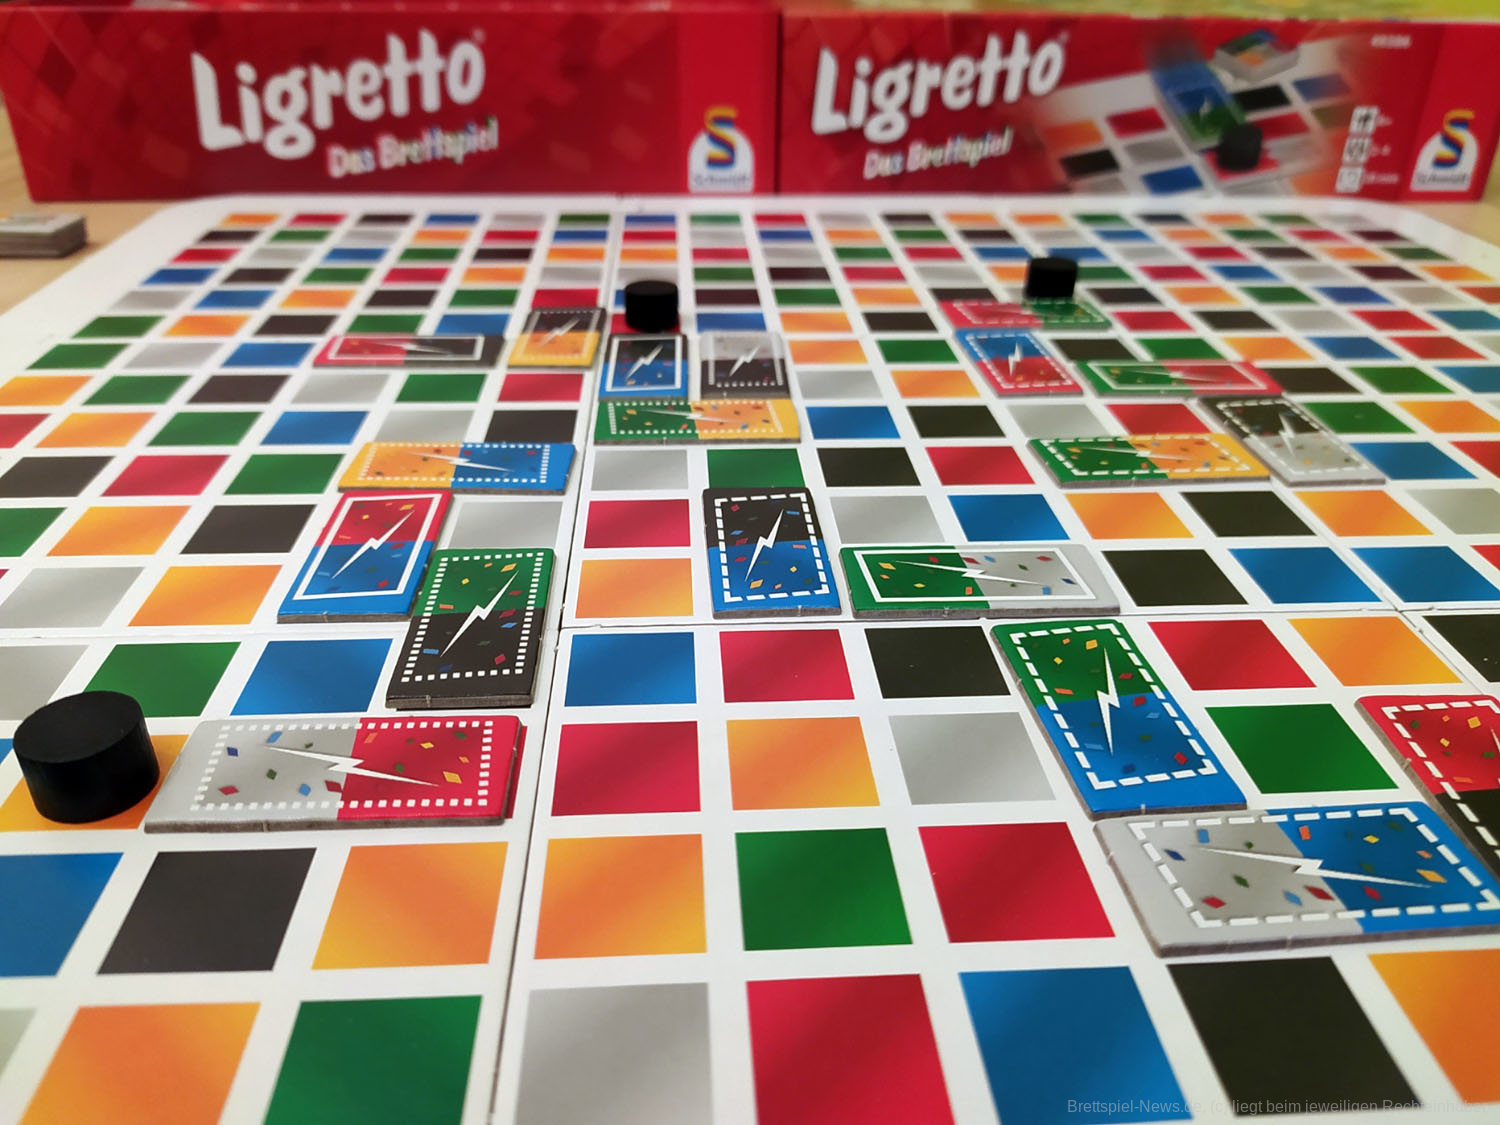 Ligretto: Das Brettspiel, Board Game